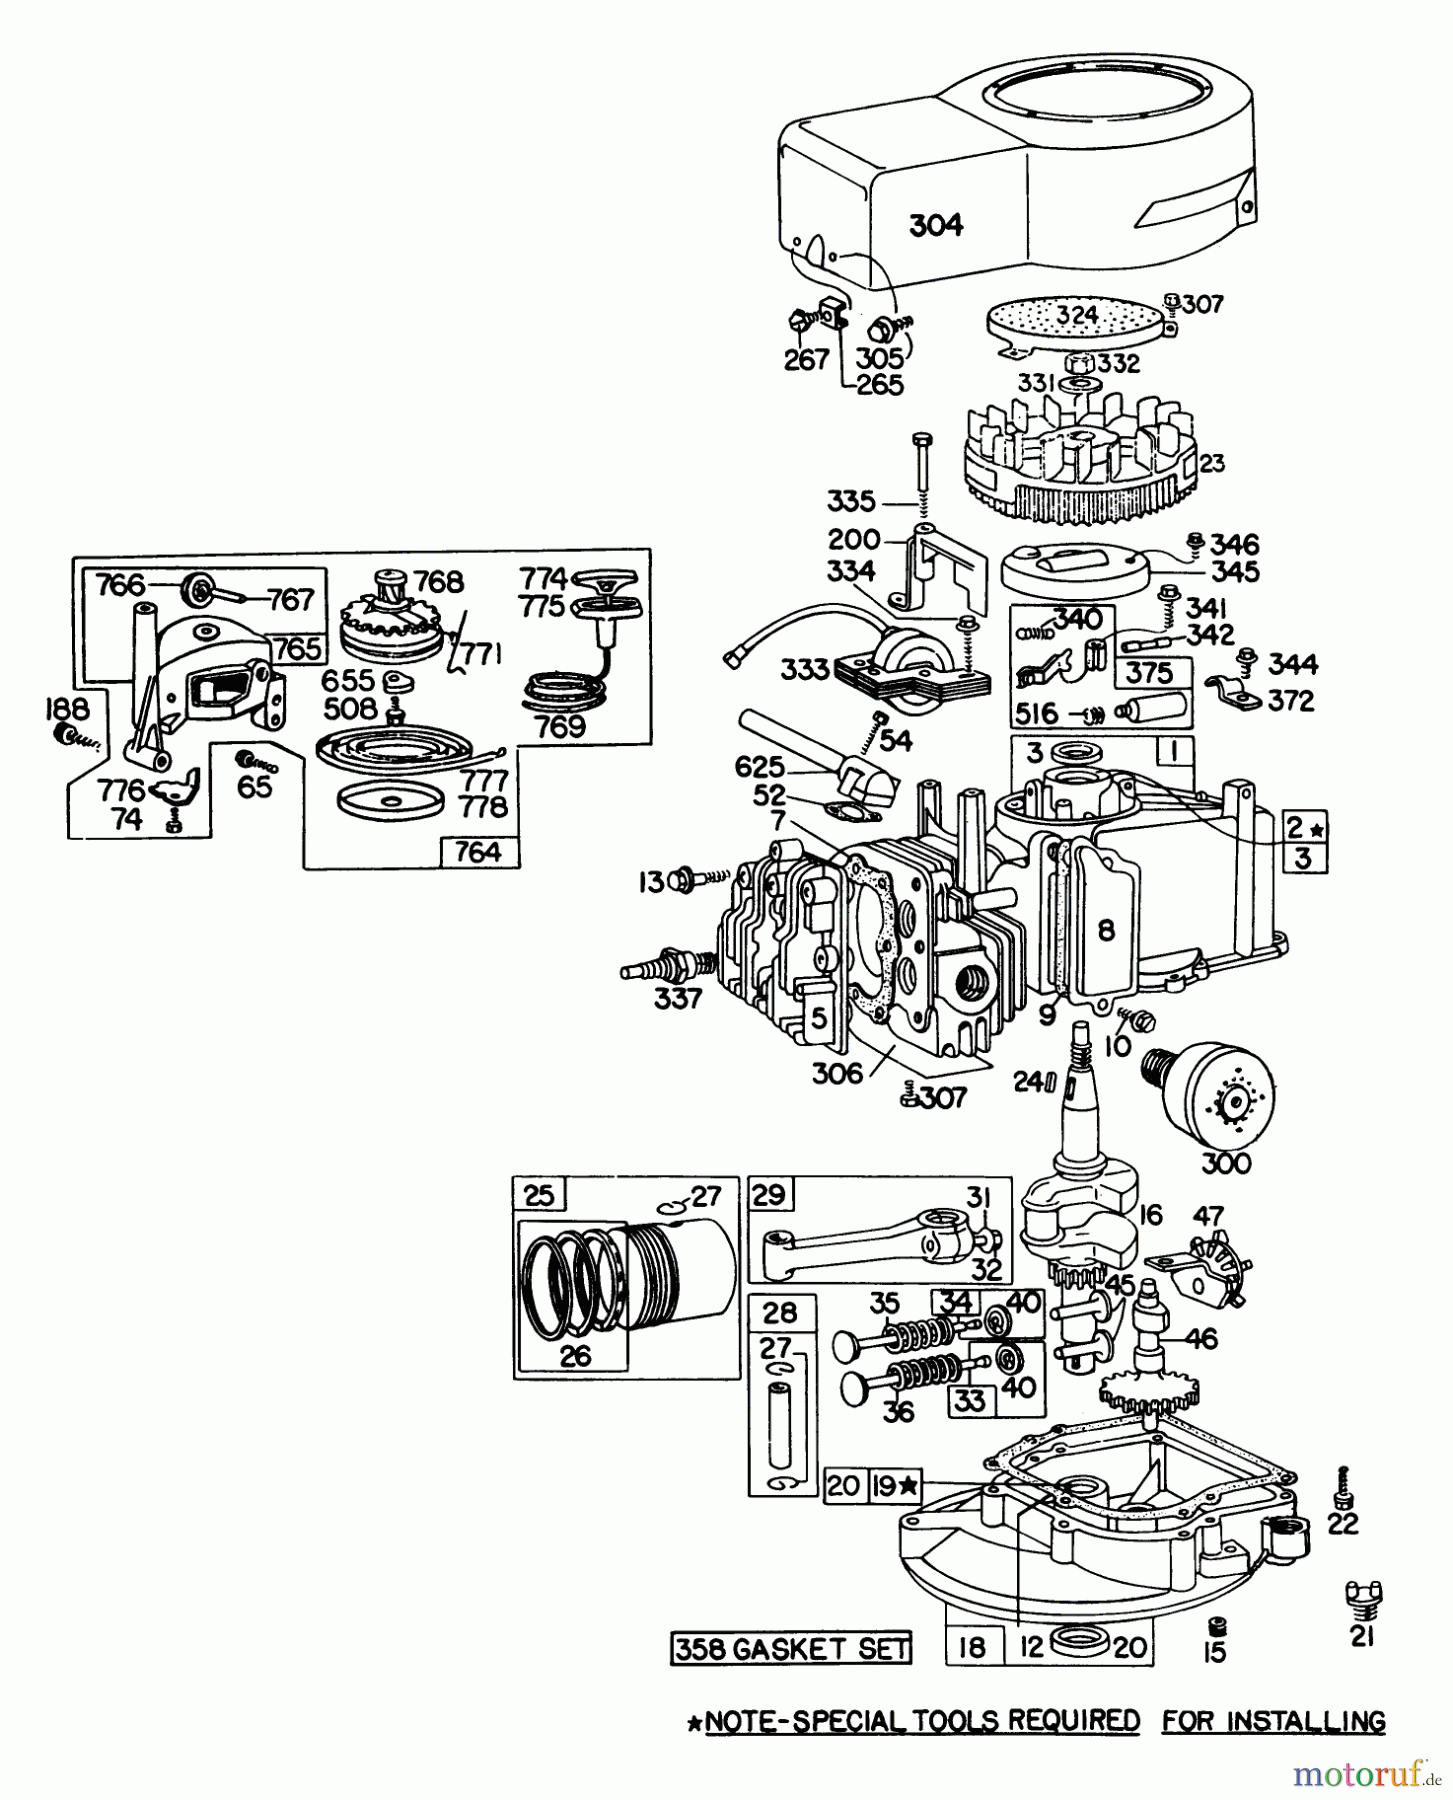  Toro Neu Mowers, Walk-Behind Seite 1 16113 - Toro Whirlwind II Lawnmower, 1978 (8000001-8999999) ENGINE BRIGGS & STRATTON MODEL 92908-1744-01 FOR 21